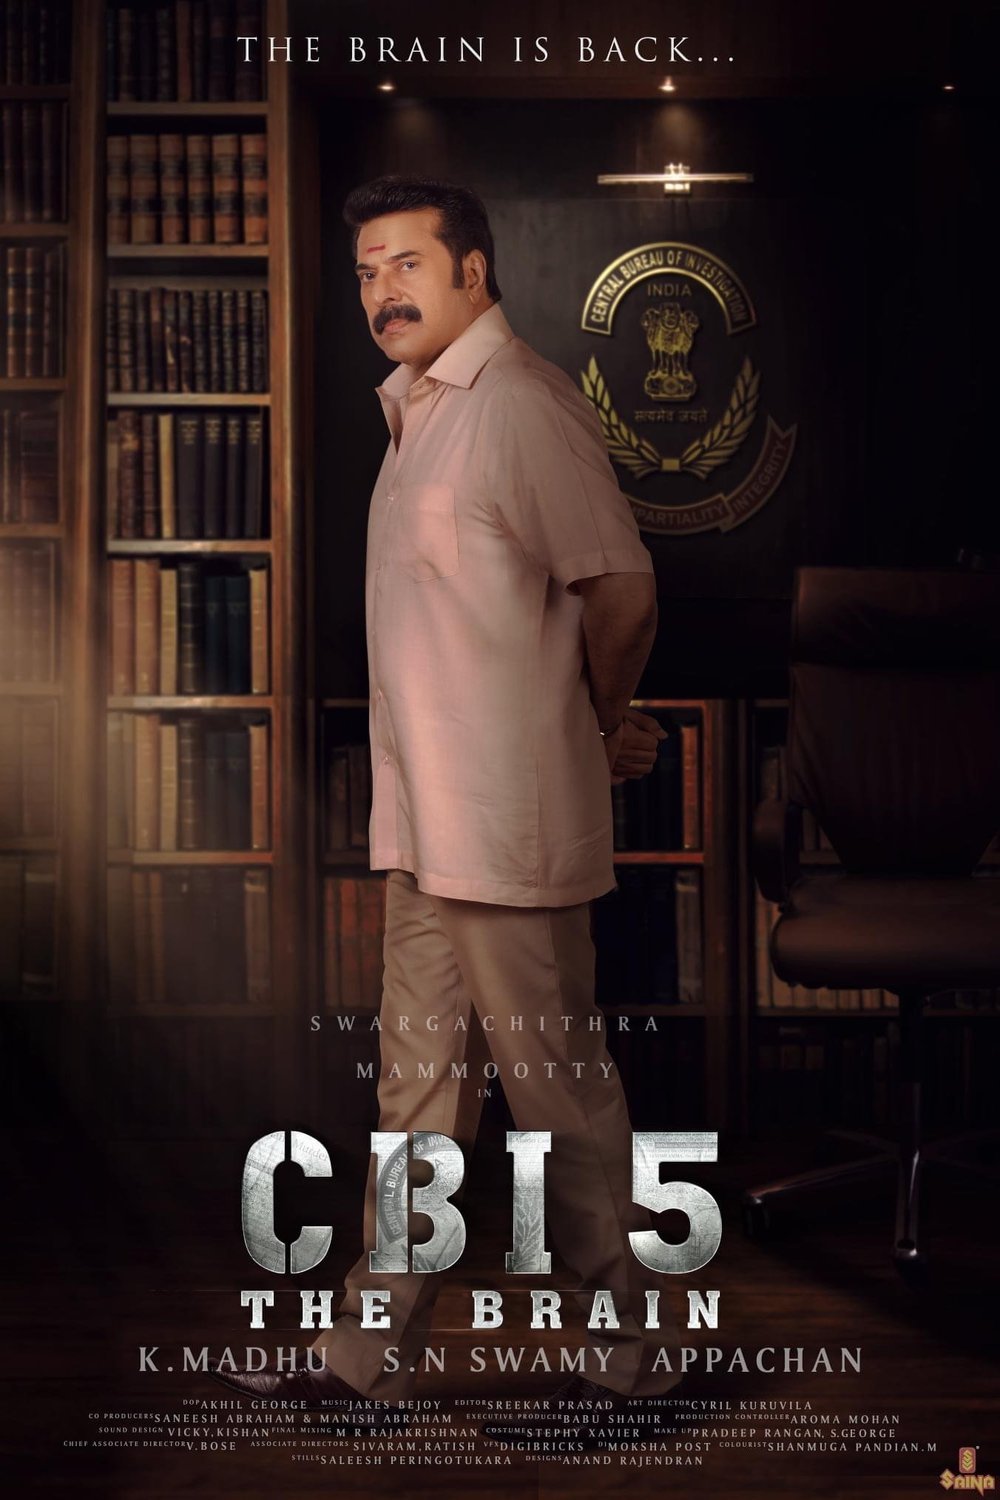 Malayalam poster of the movie CBI 5